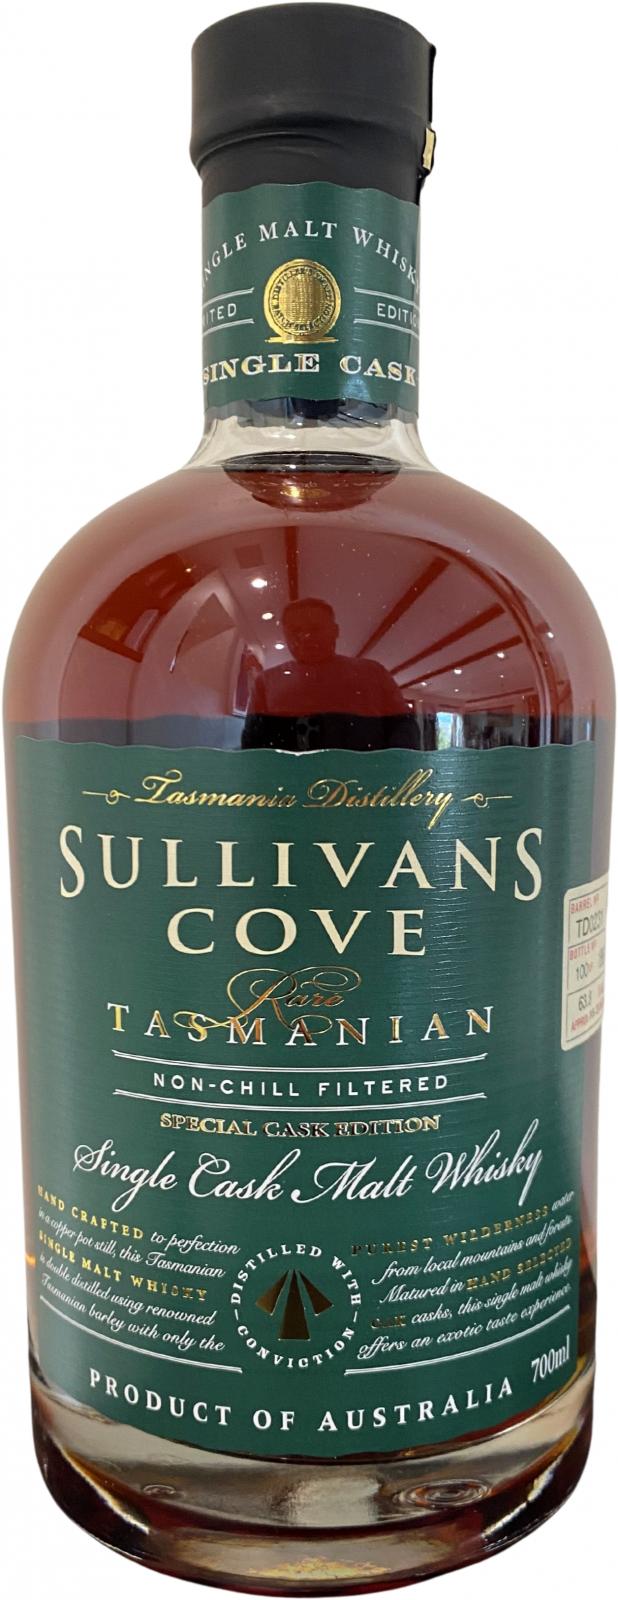 Sullivans Cove 2007 Special Cask Edition 200L American Oak ex Tawny TD0231 63.8% 700ml